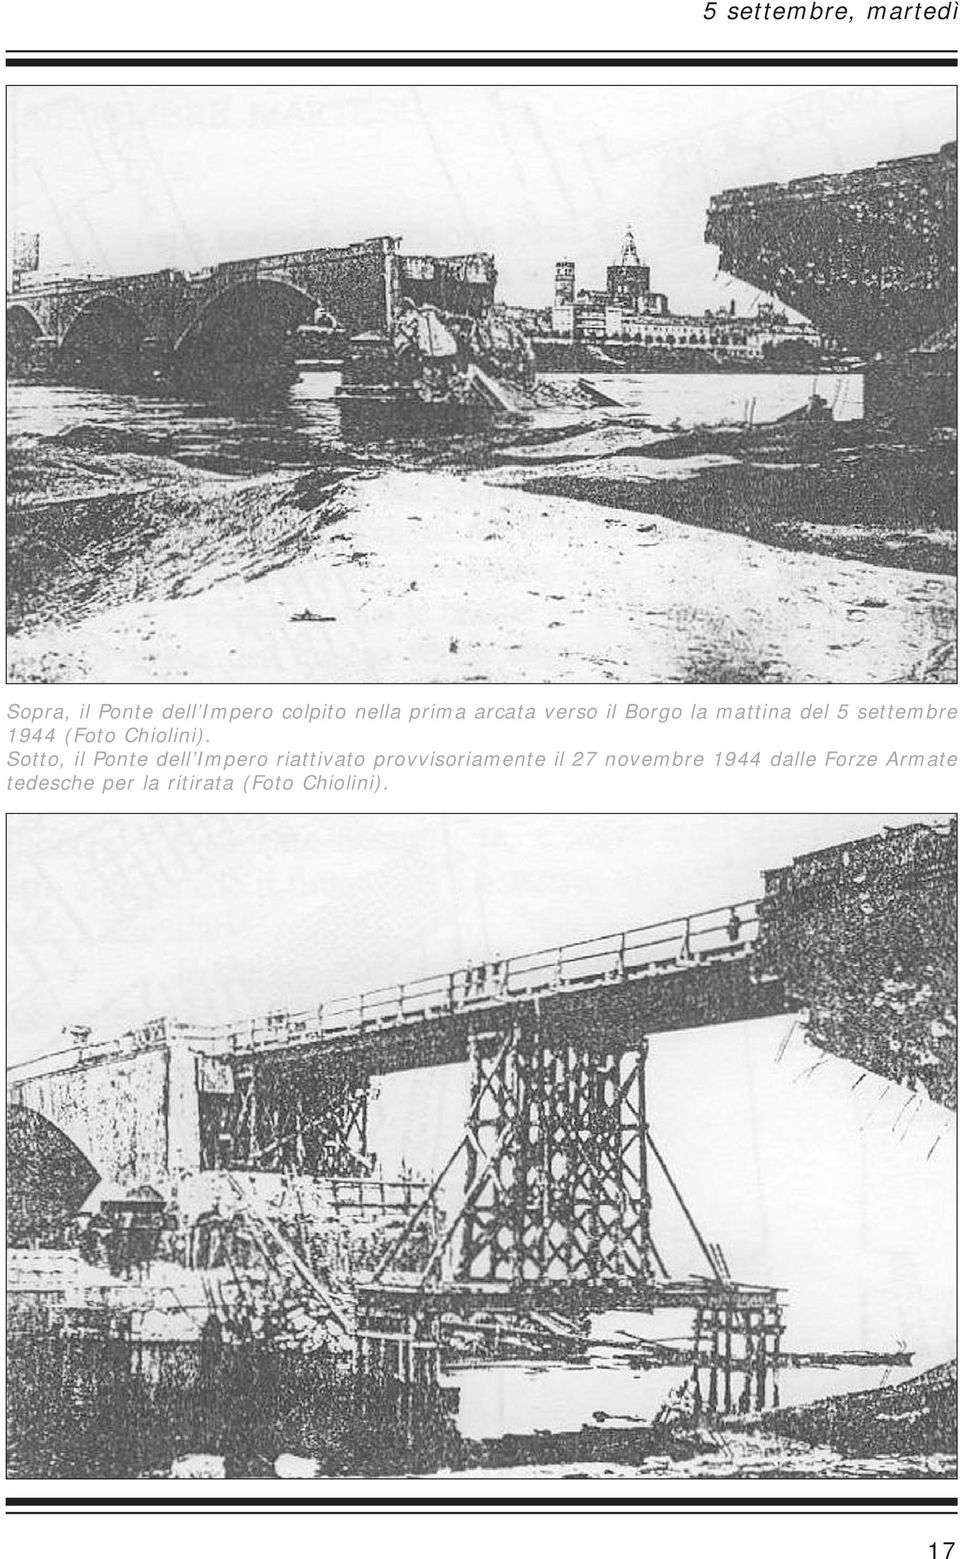 Sotto, il Ponte dell Impero riattivato provvisoriamente il 27